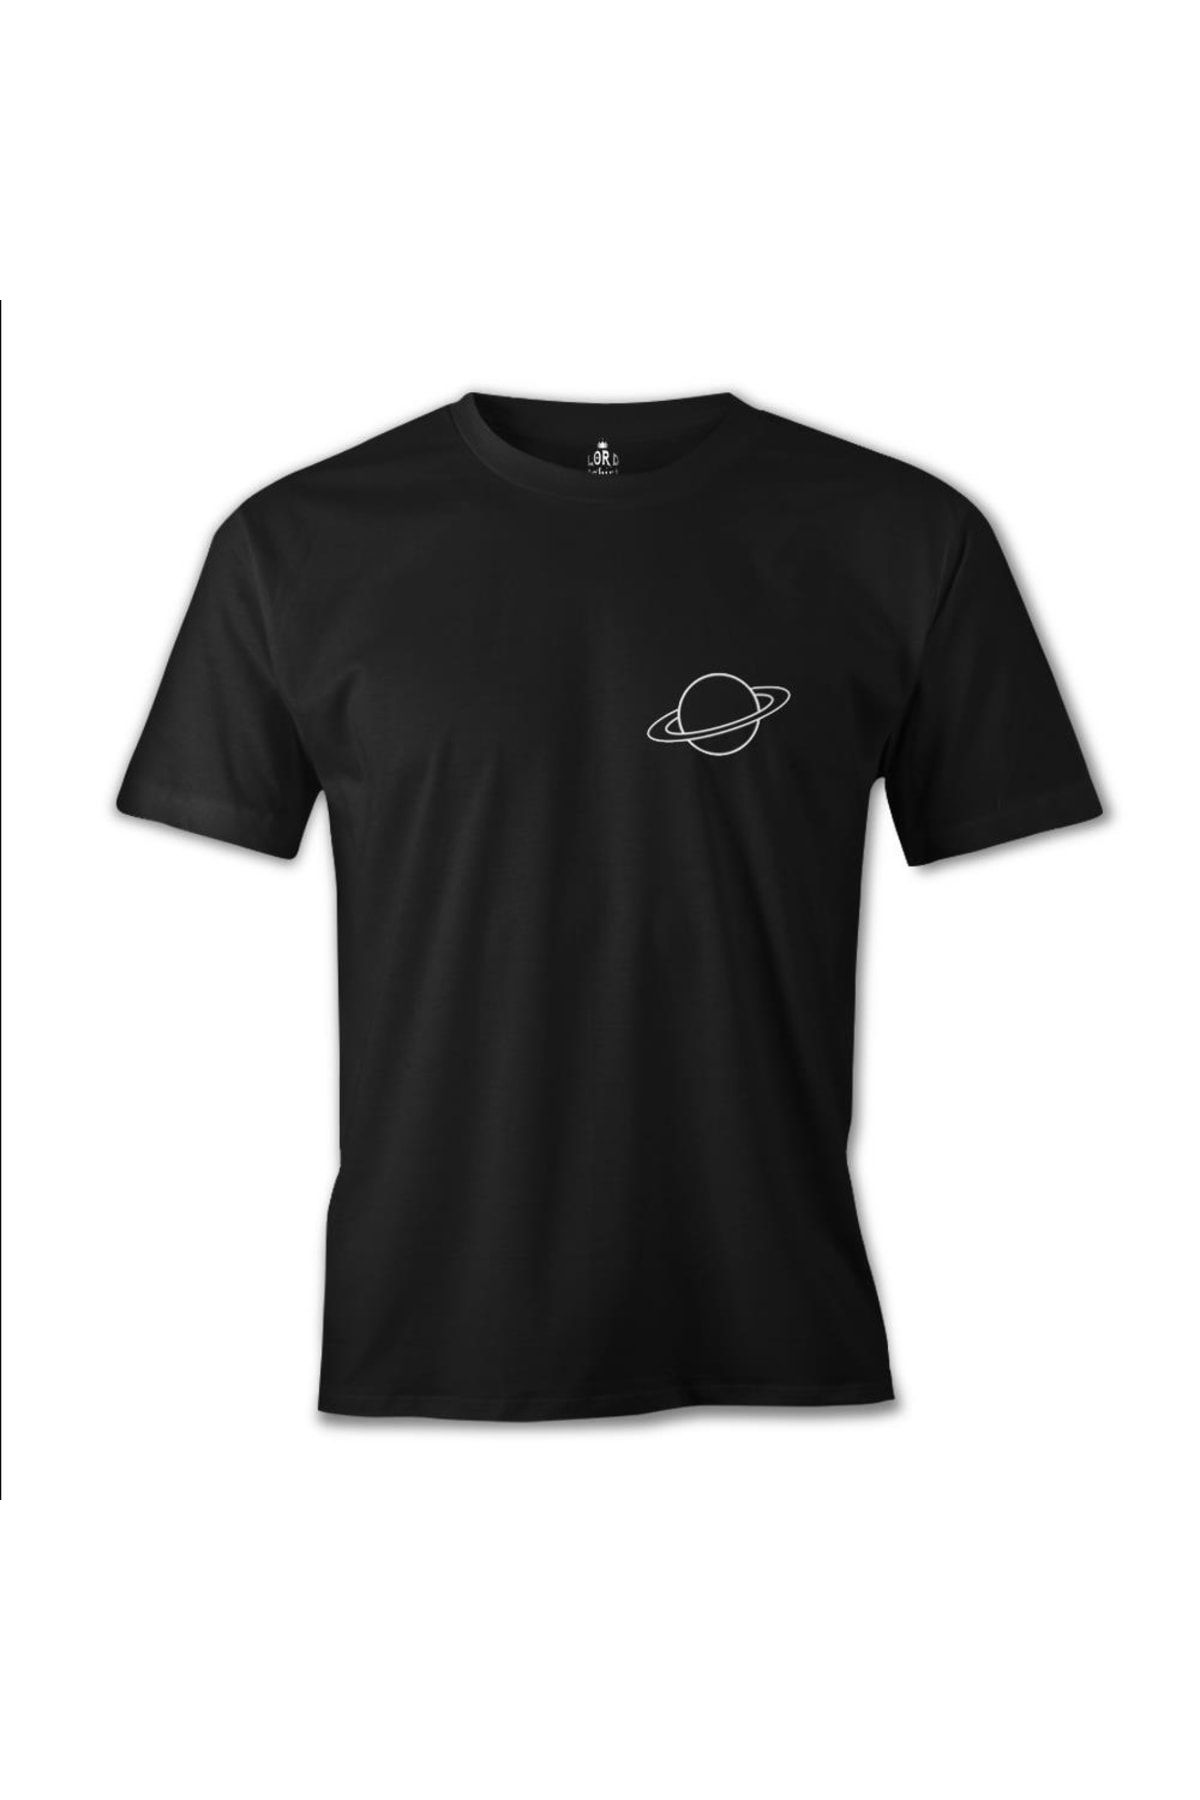 Lord T-Shirt Saturn Logo Siyah Erkek Tshirt